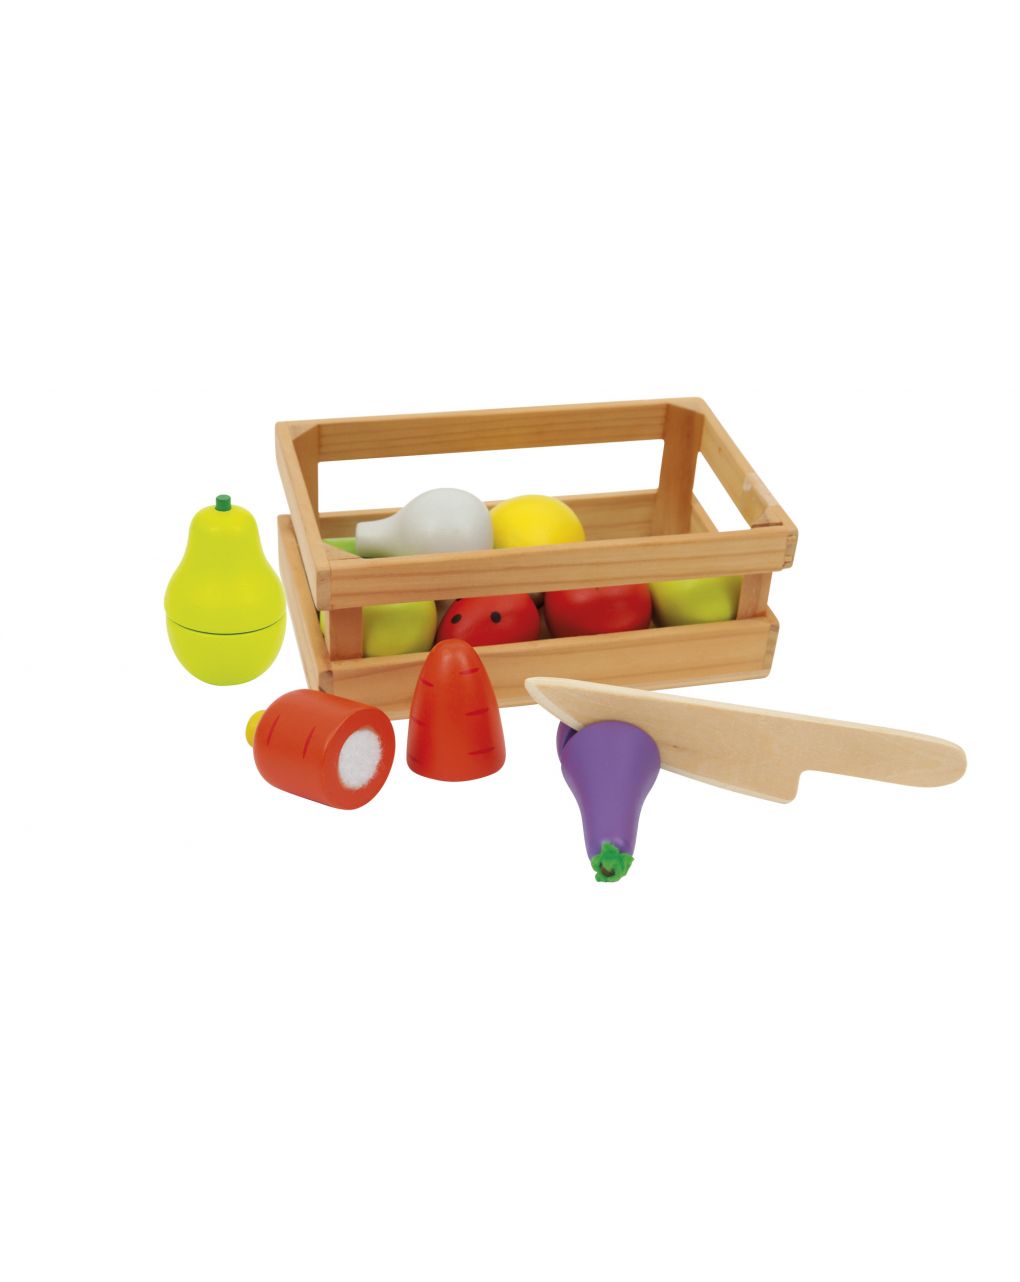 Wood'n play - kit fruta - Wood'N'Play